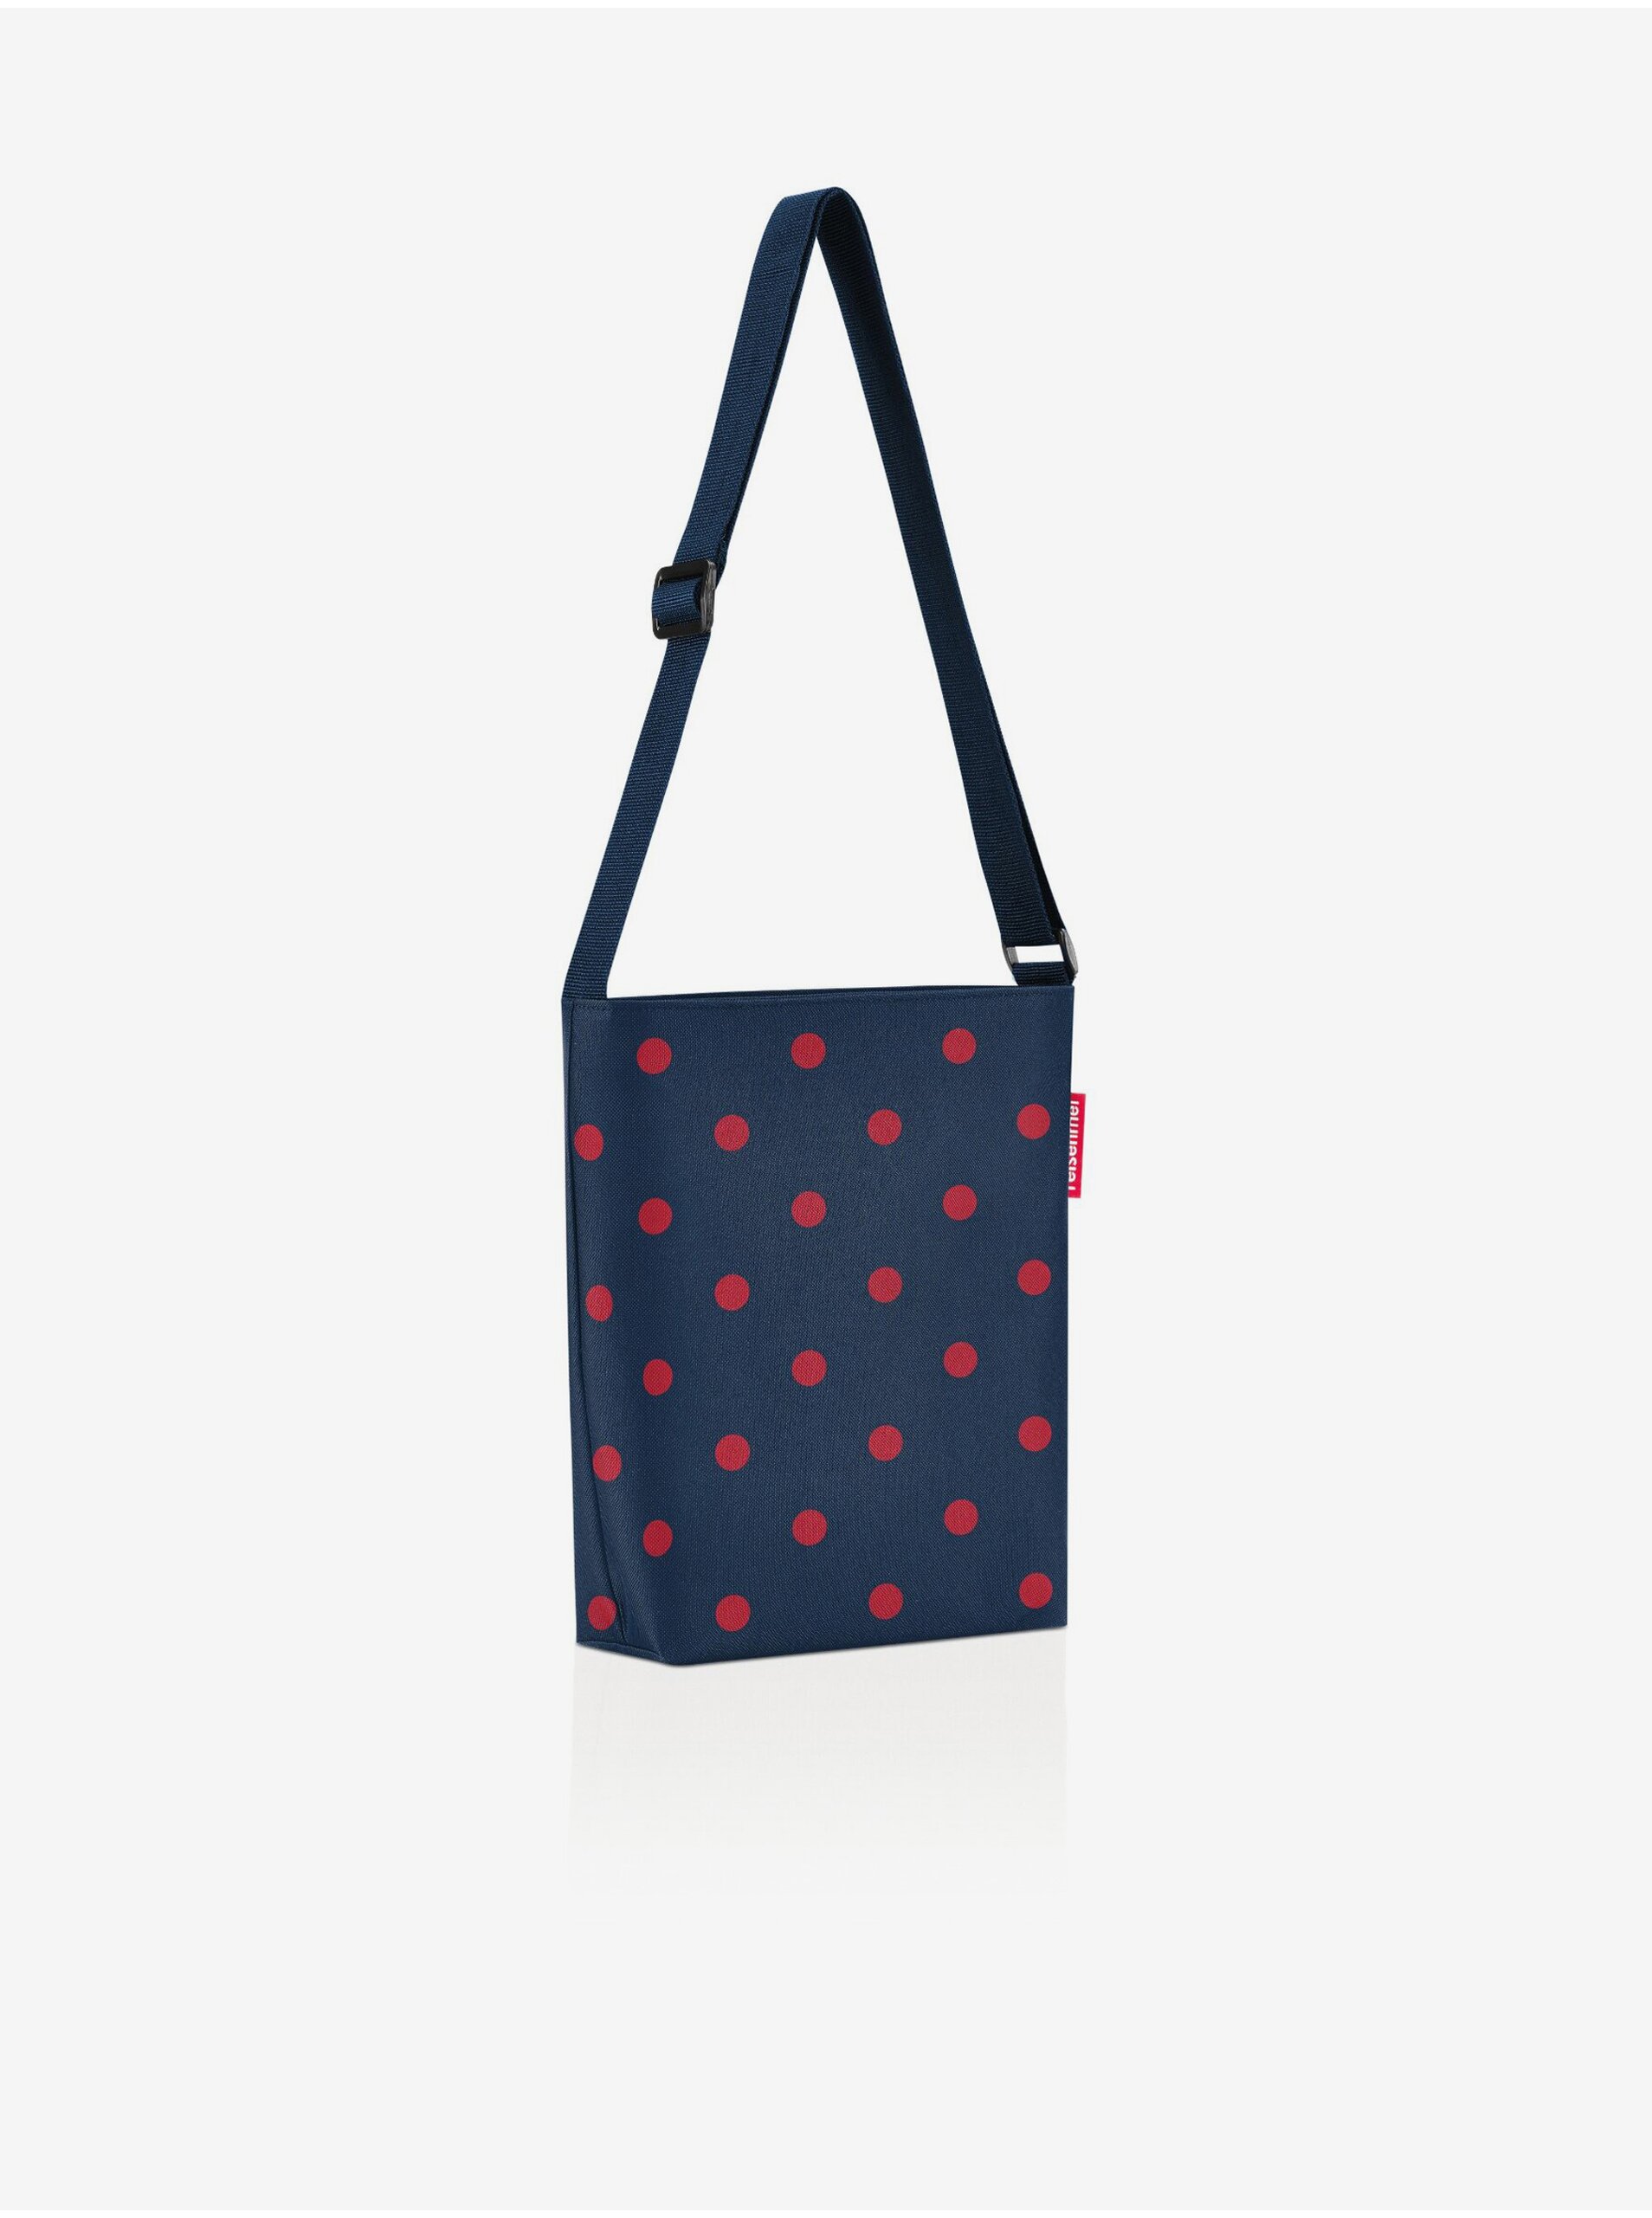 E-shop Tmavě modrá dámská puntíkovaná kabelka přes rameno Reisenthel Shoulderbag S Mixed Dots Red